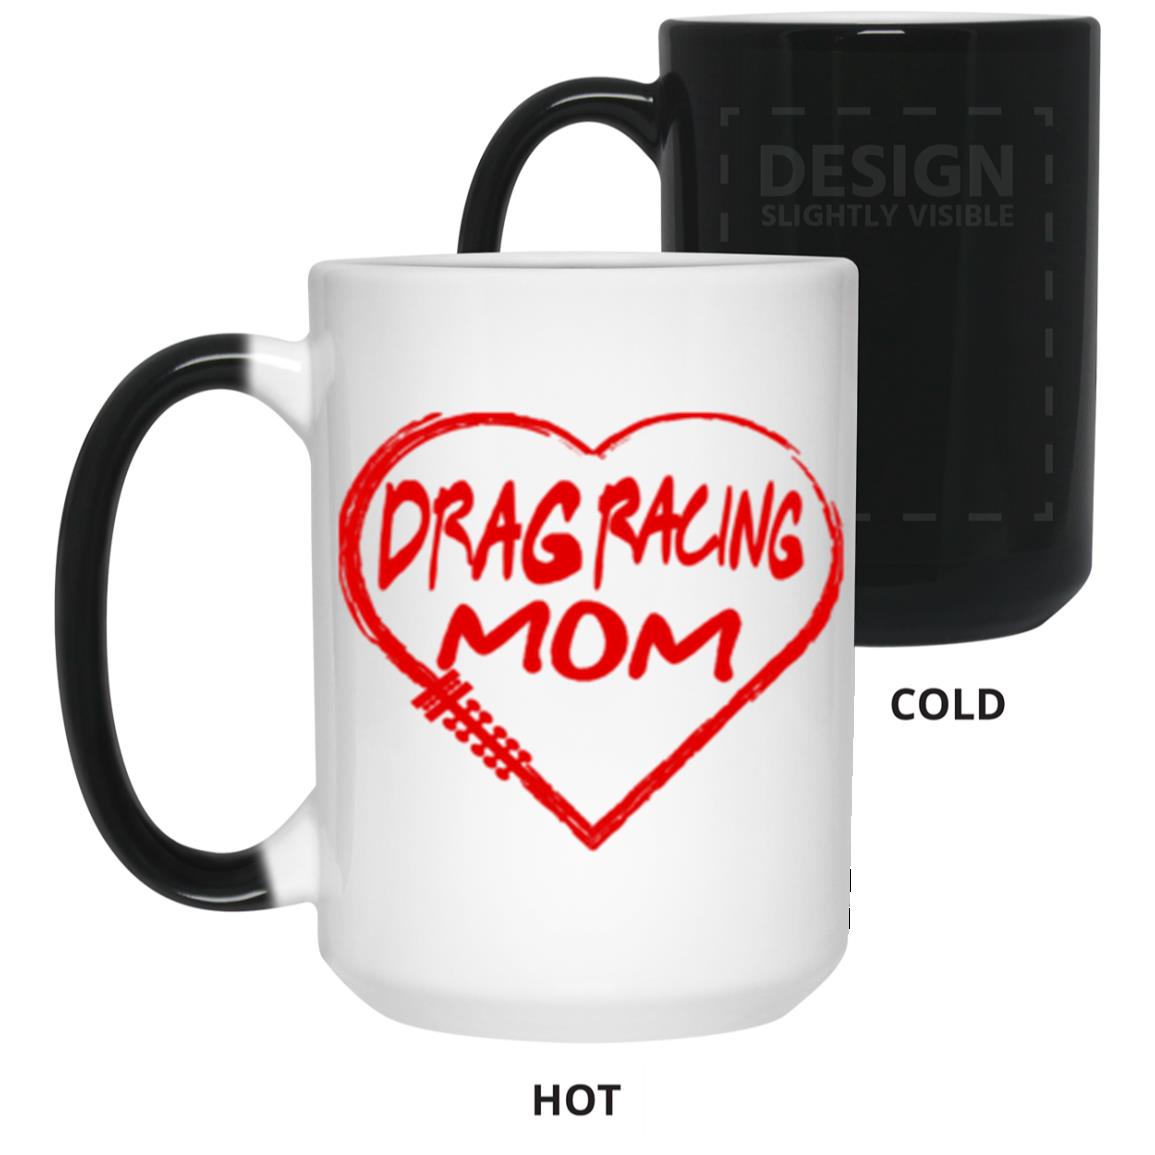 Drag Racing Mom Heart 15 oz. Color Changing Mug